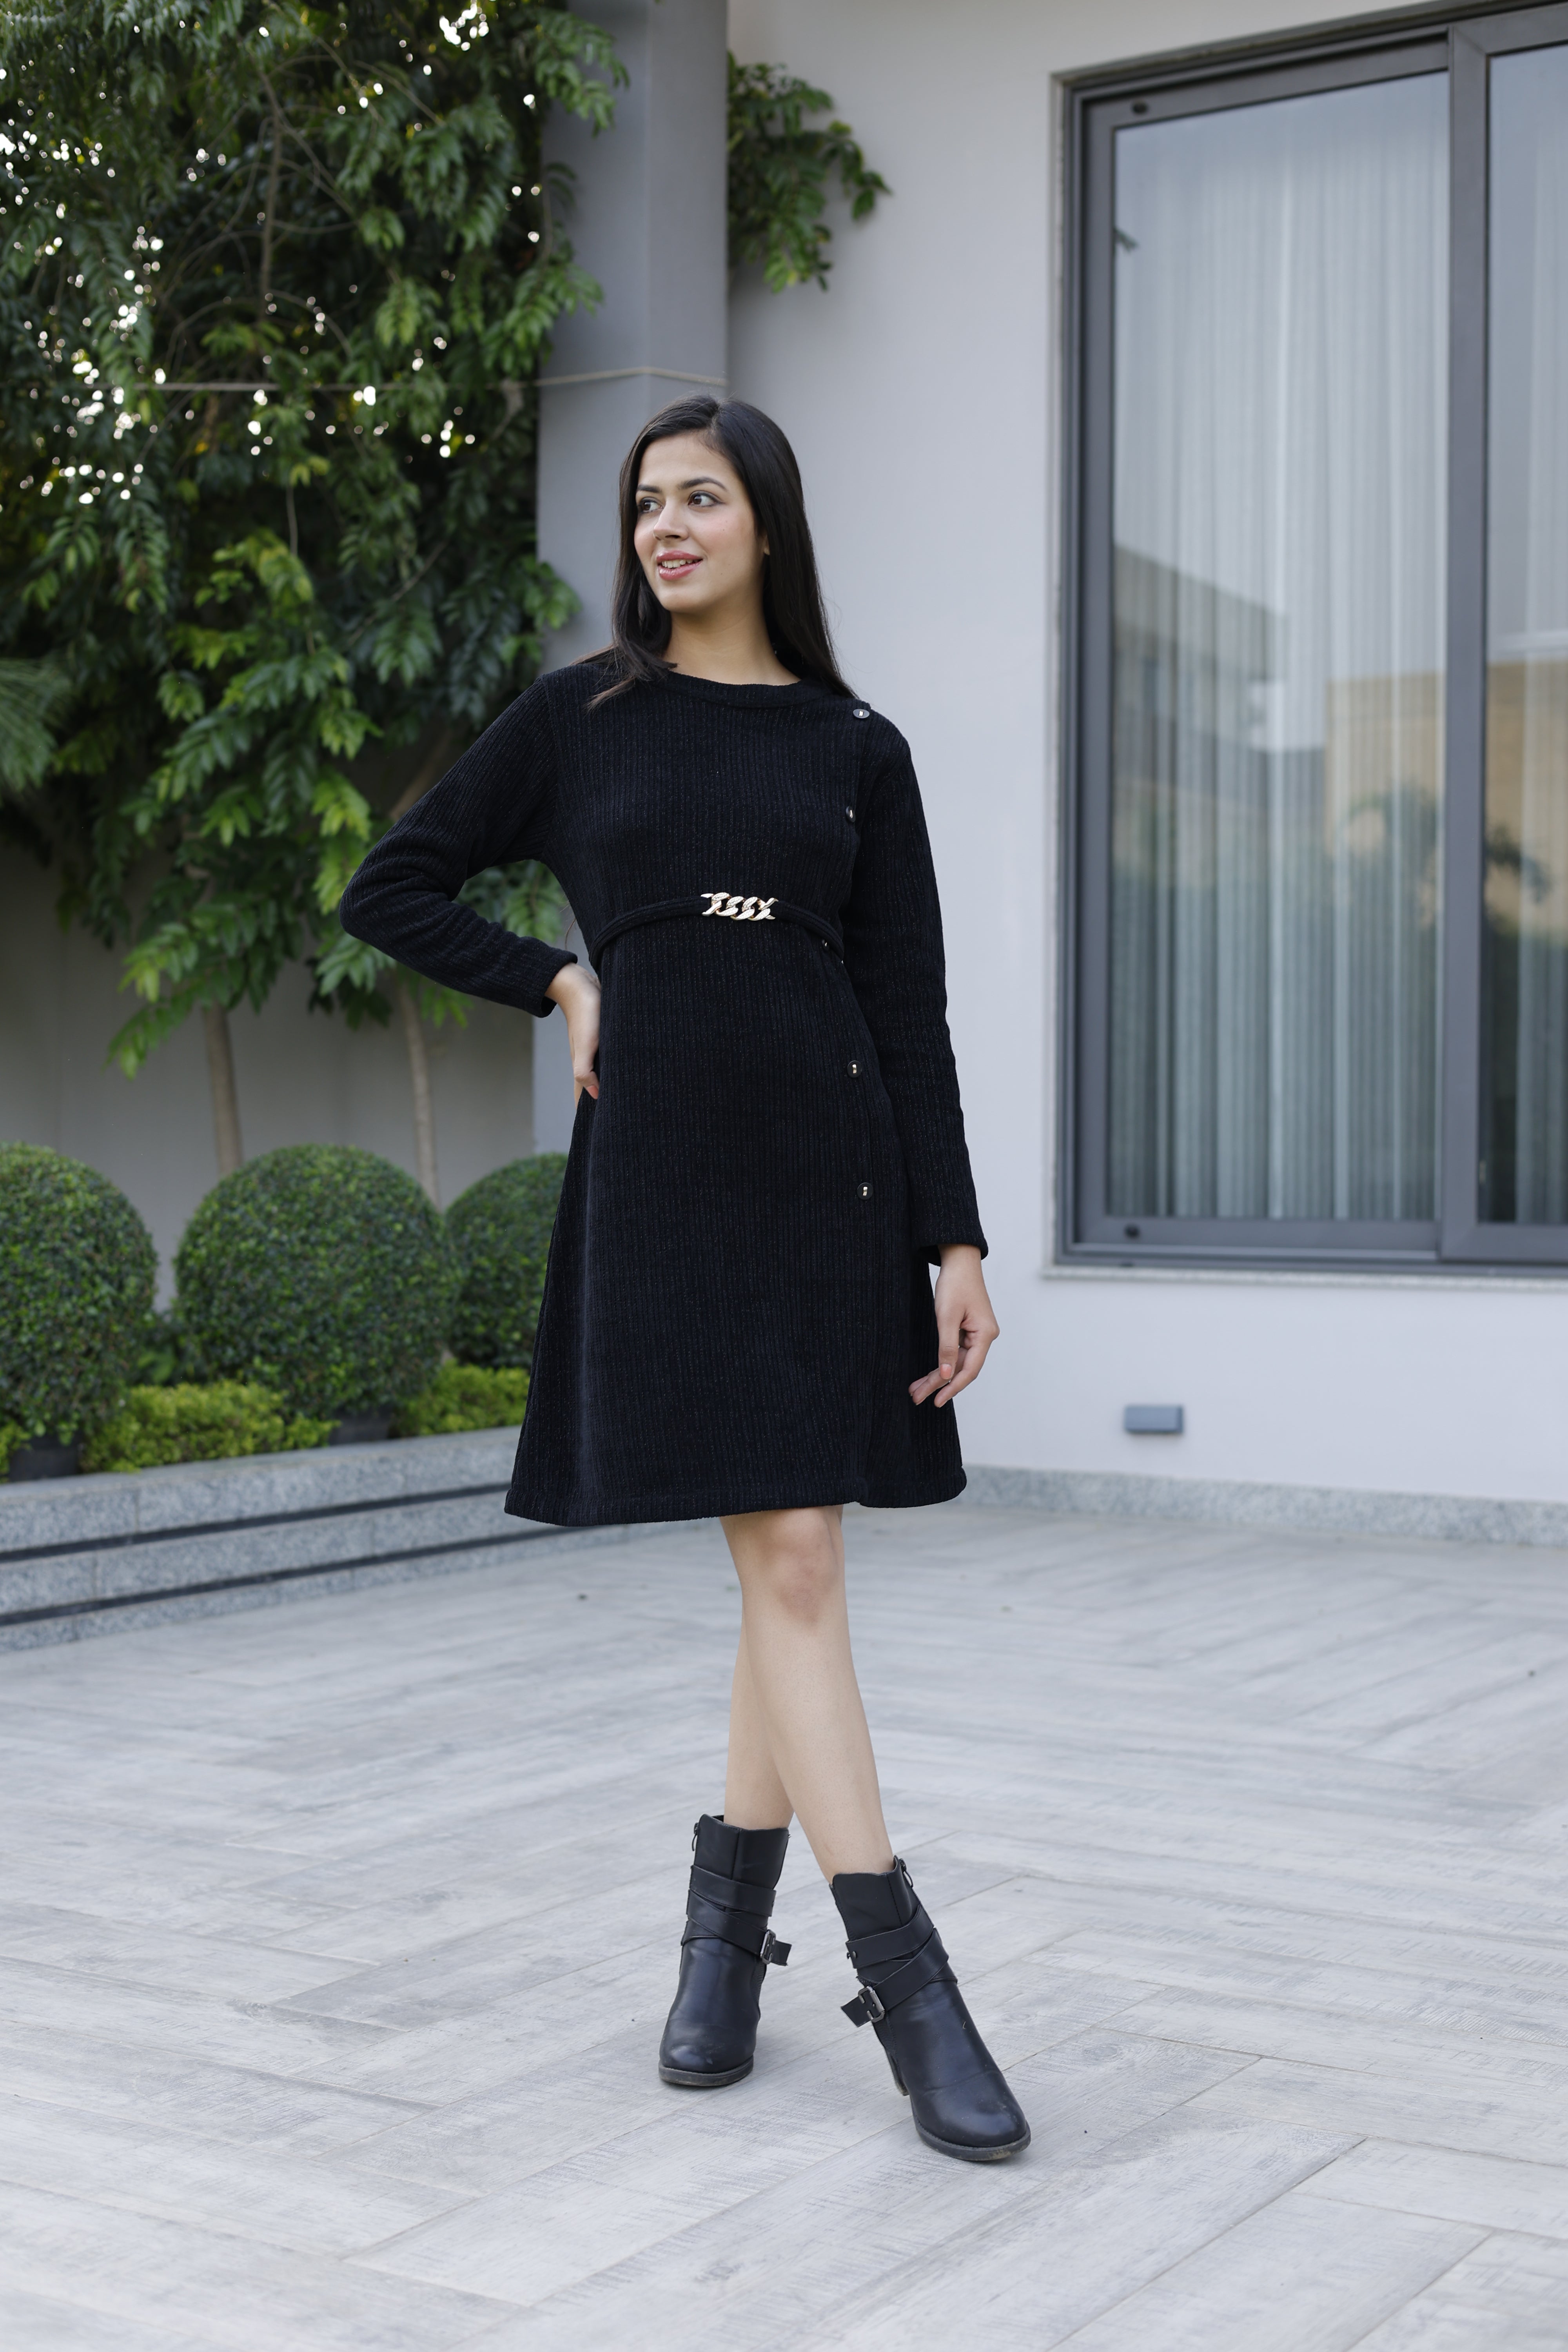 Buy Black Pleated Woollen Dress Online - W for Woman